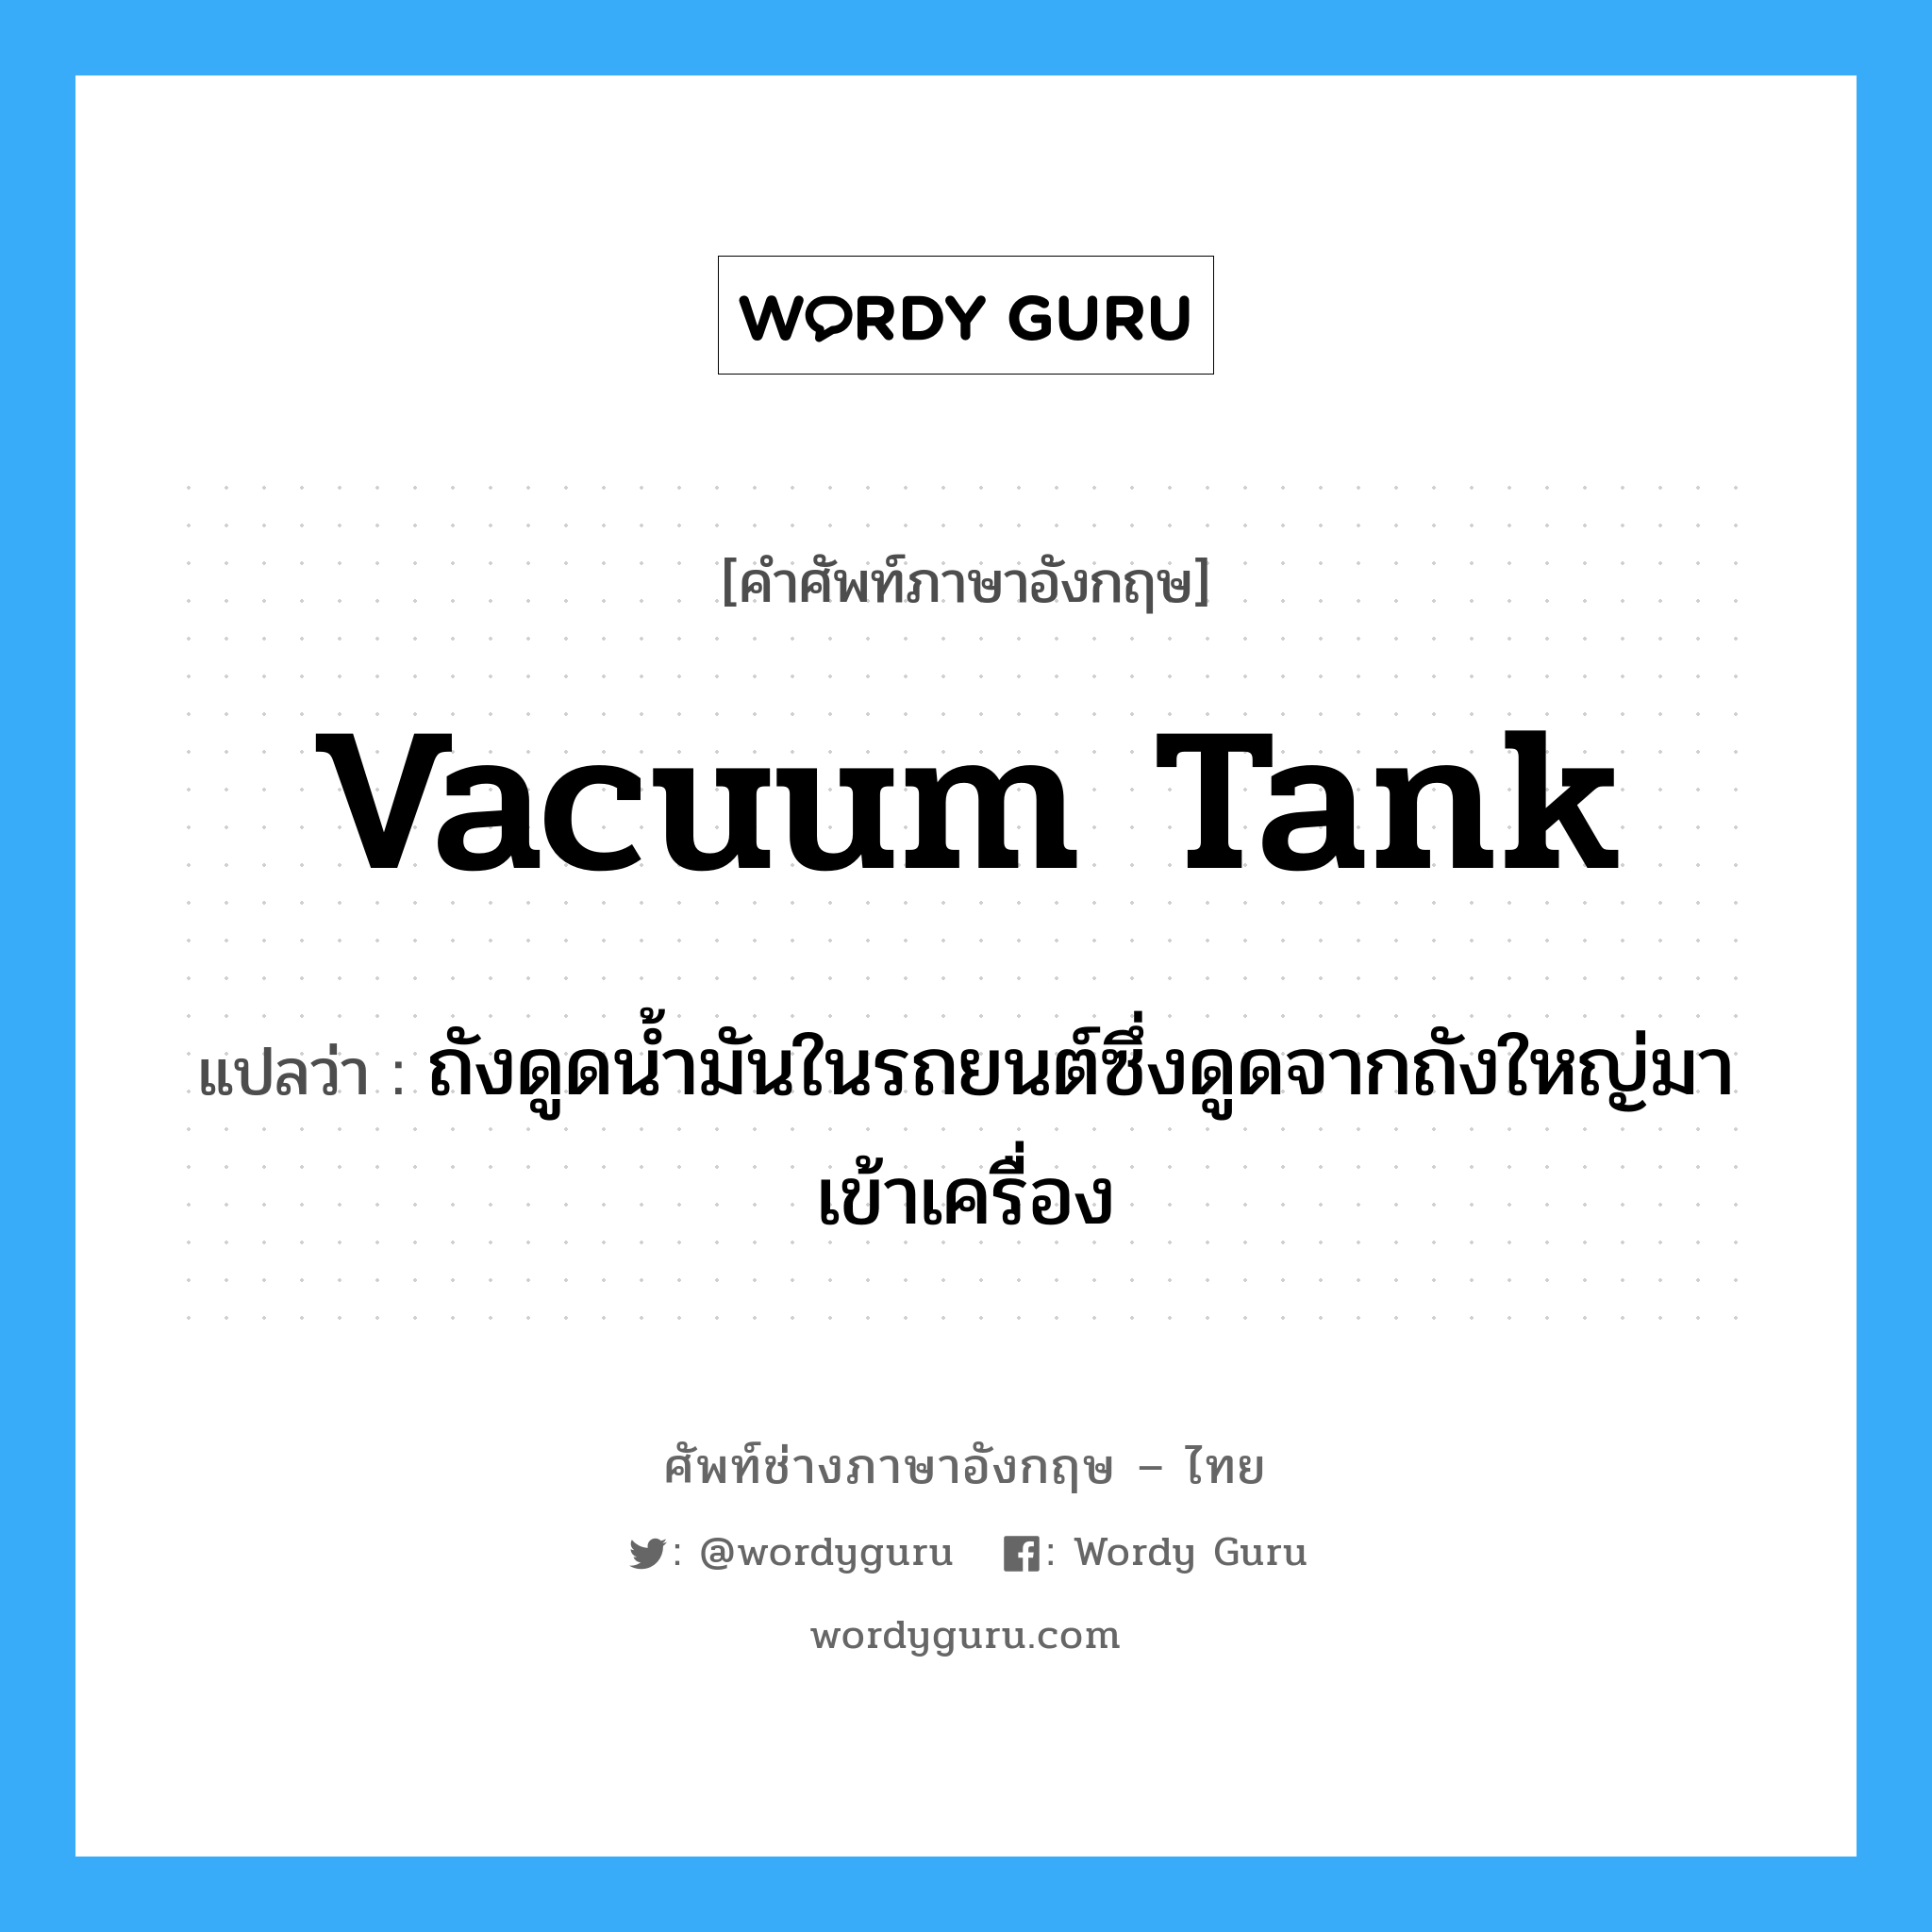 vacuum tank แปลว่า?, คำศัพท์ช่างภาษาอังกฤษ - ไทย vacuum tank คำศัพท์ภาษาอังกฤษ vacuum tank แปลว่า ถังดูดน้ำมันในรถยนต์ซึ่งดูดจากถังใหญ่มาเข้าเครื่อง